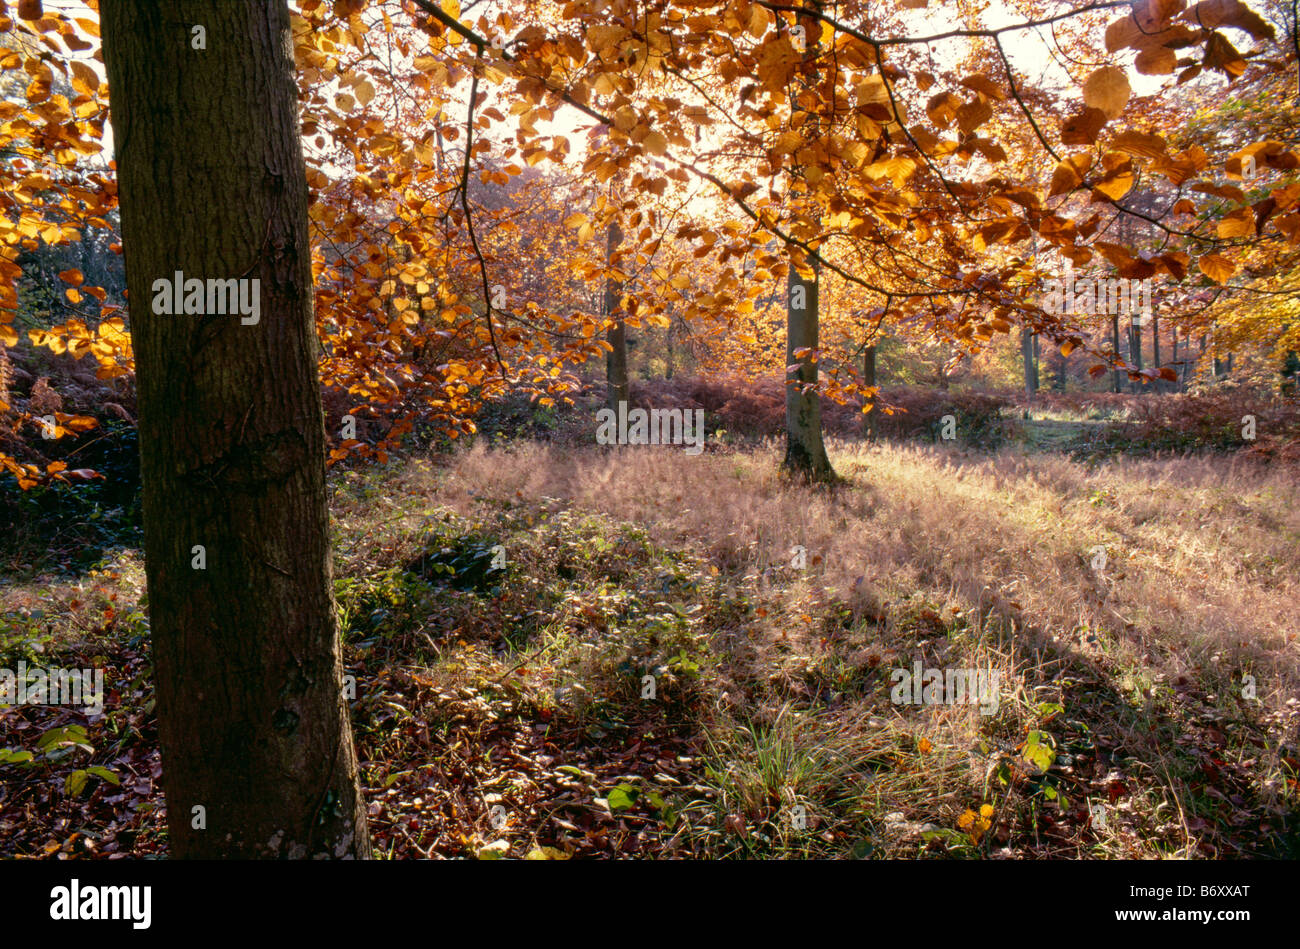 Bois plage en autmn Bere forêt, près de Wickham, Hampshire, England, UK Banque D'Images